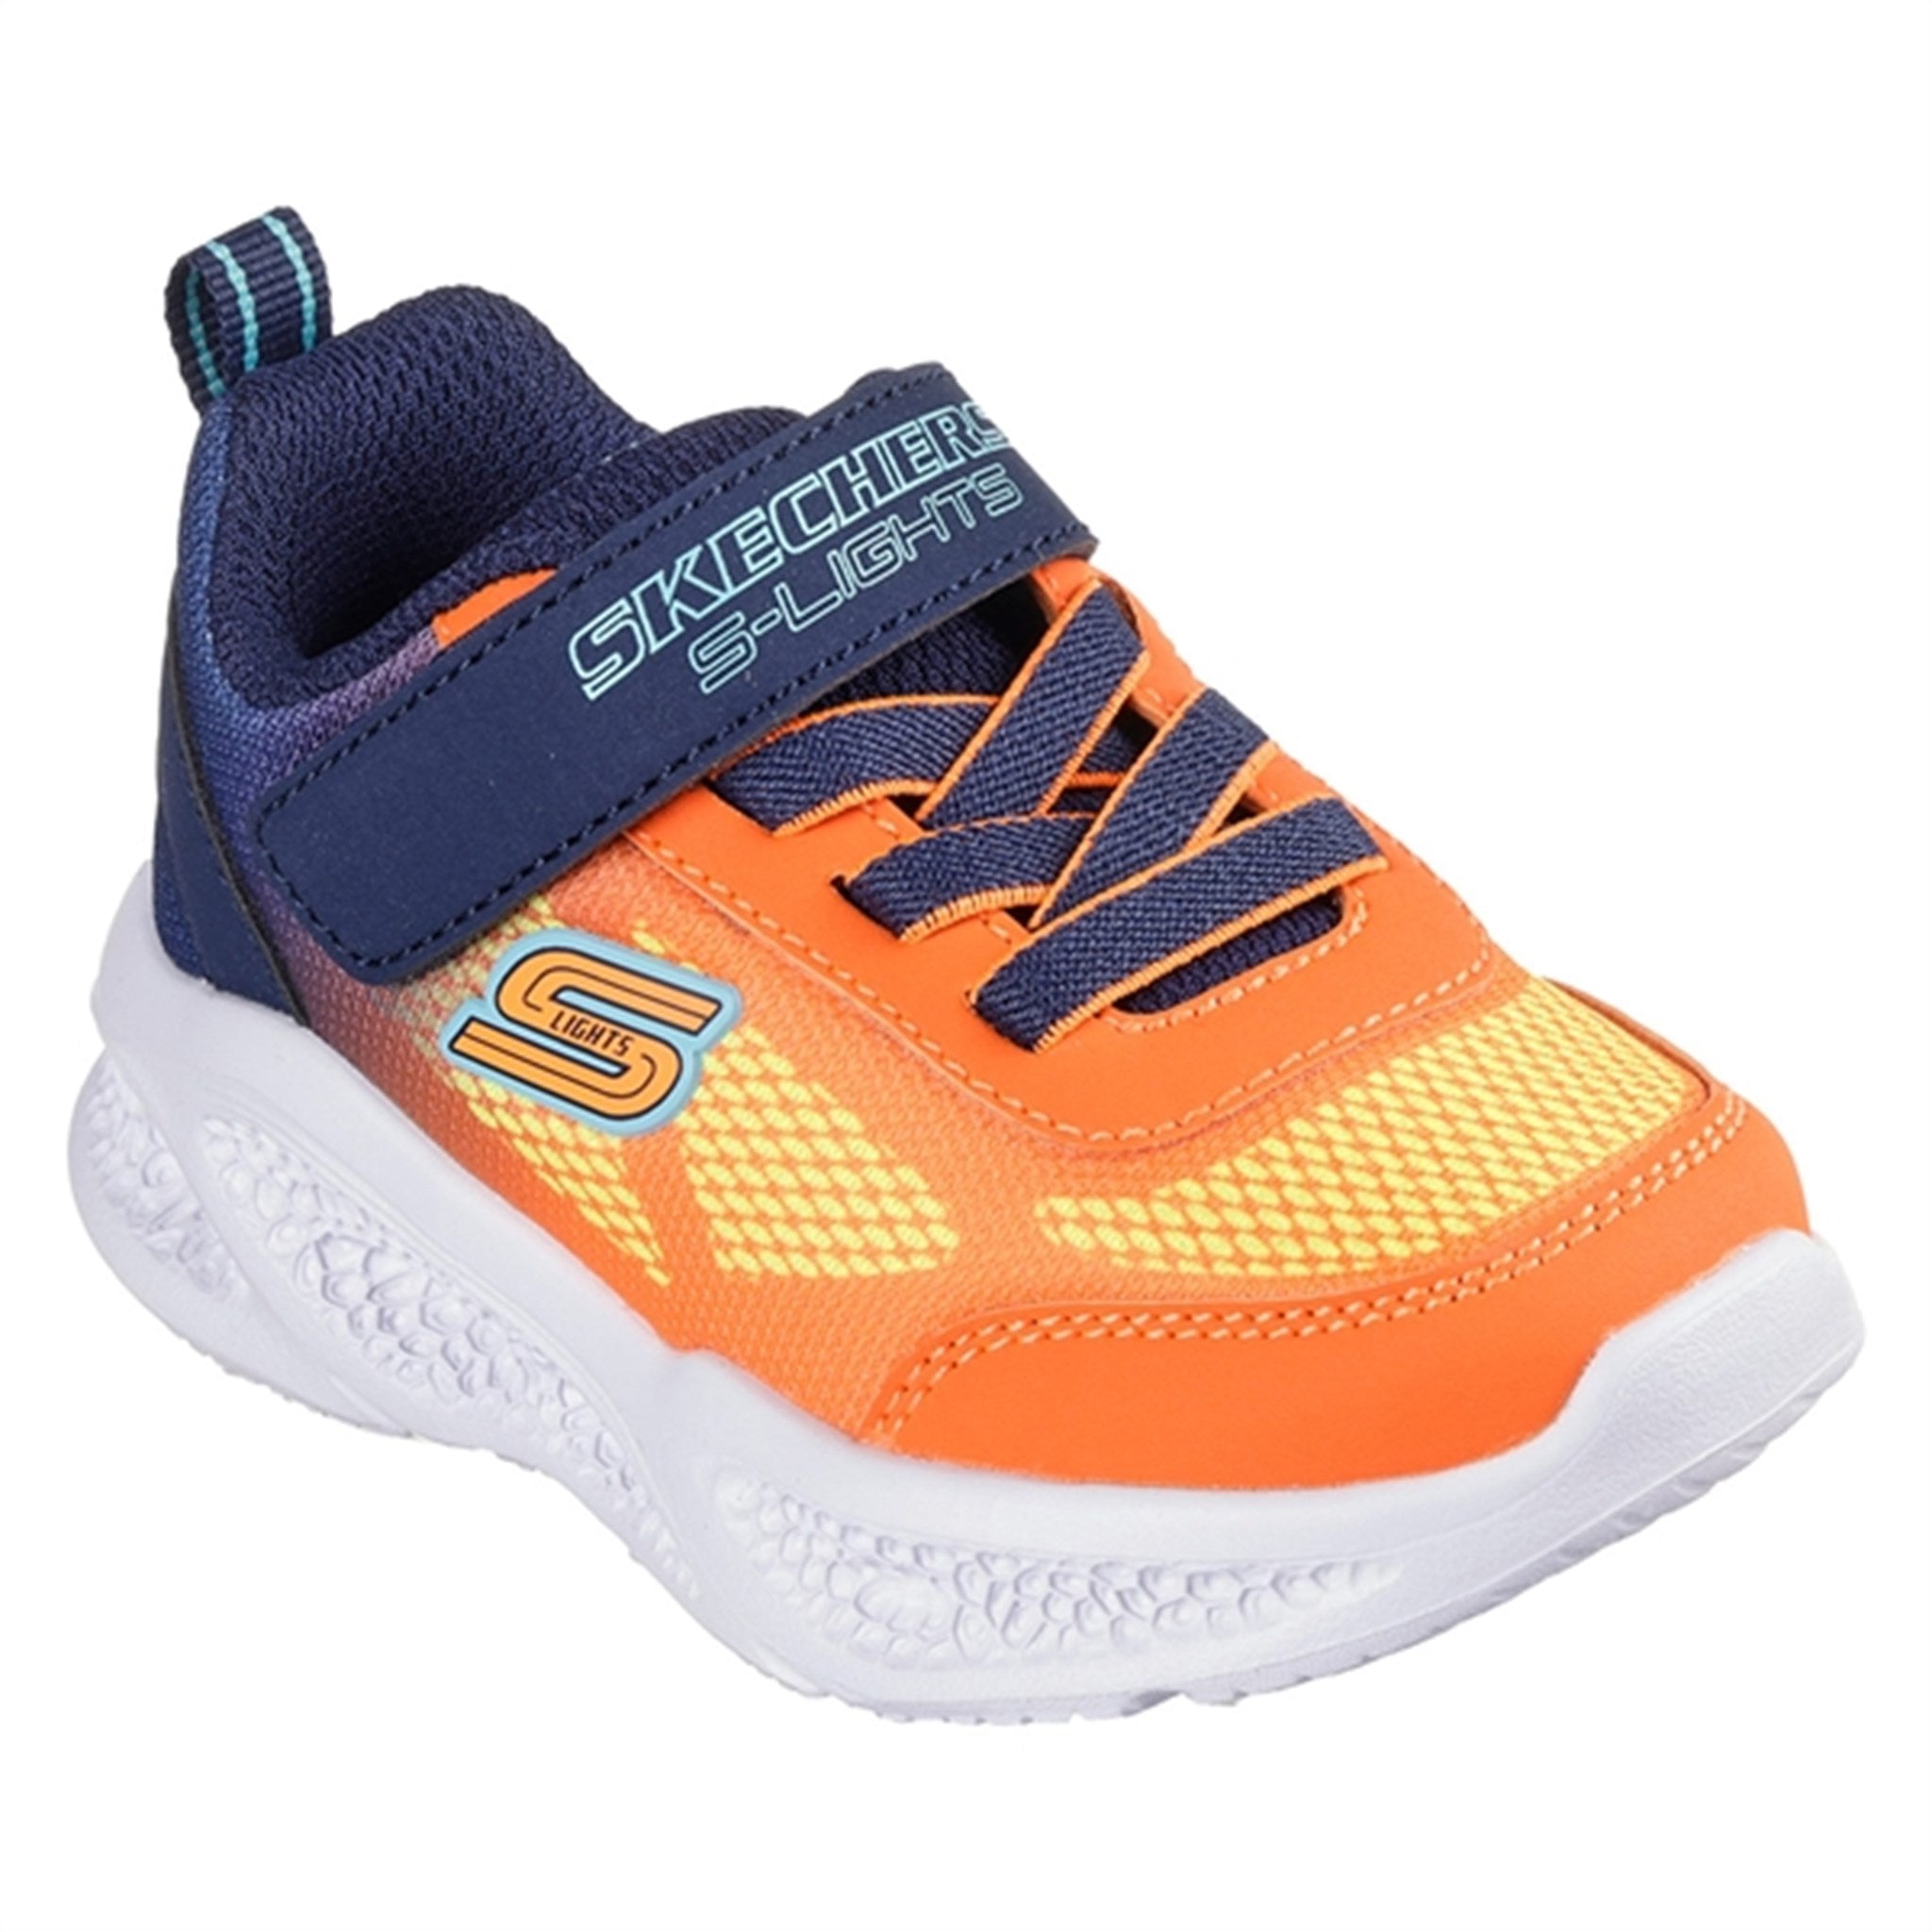 Skechers Meteor-Lights Sneakers Navy Orange